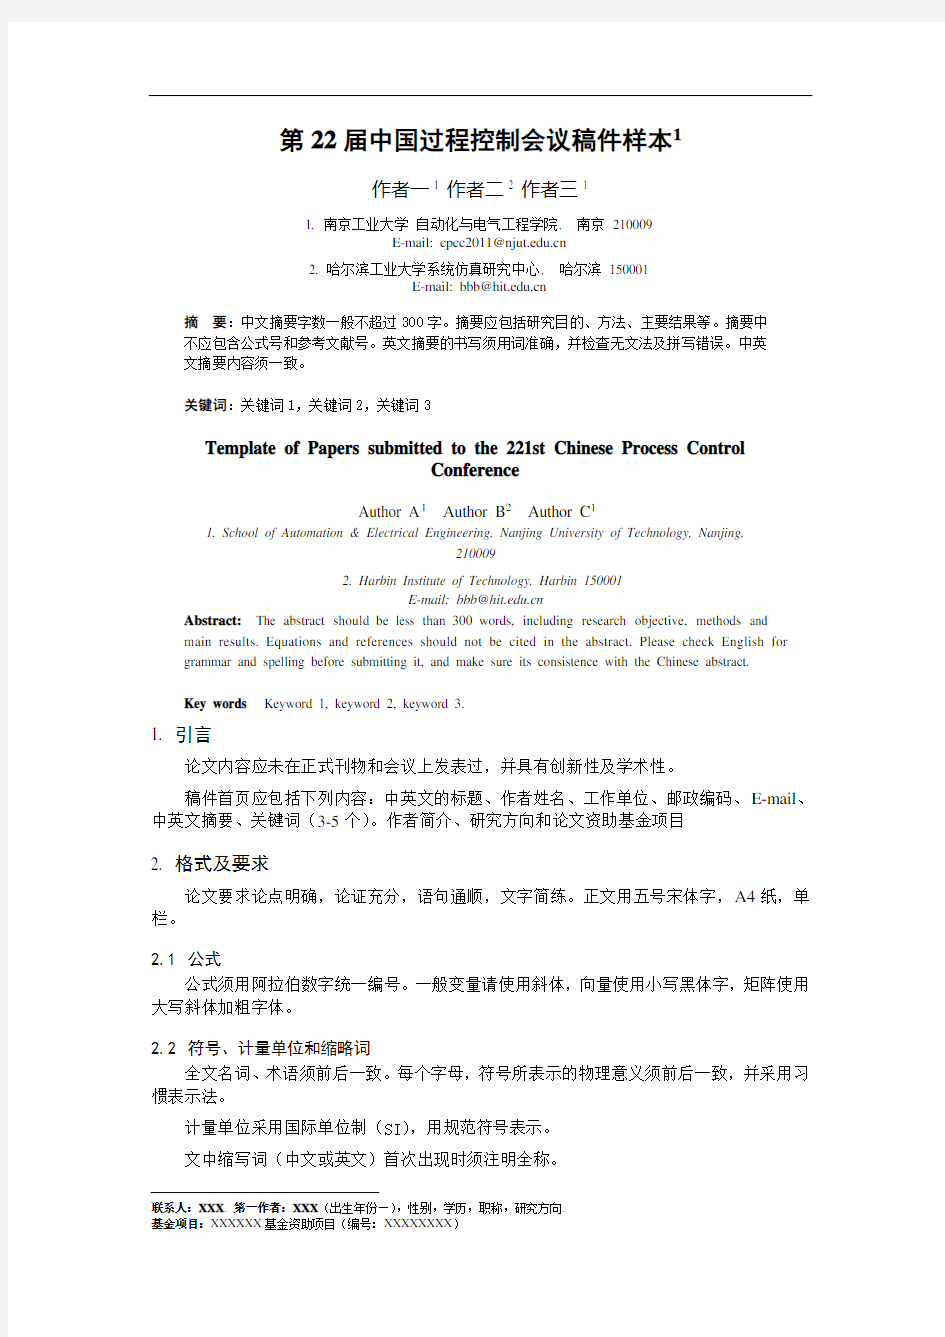 第22届中国过程控制会议稿件样本